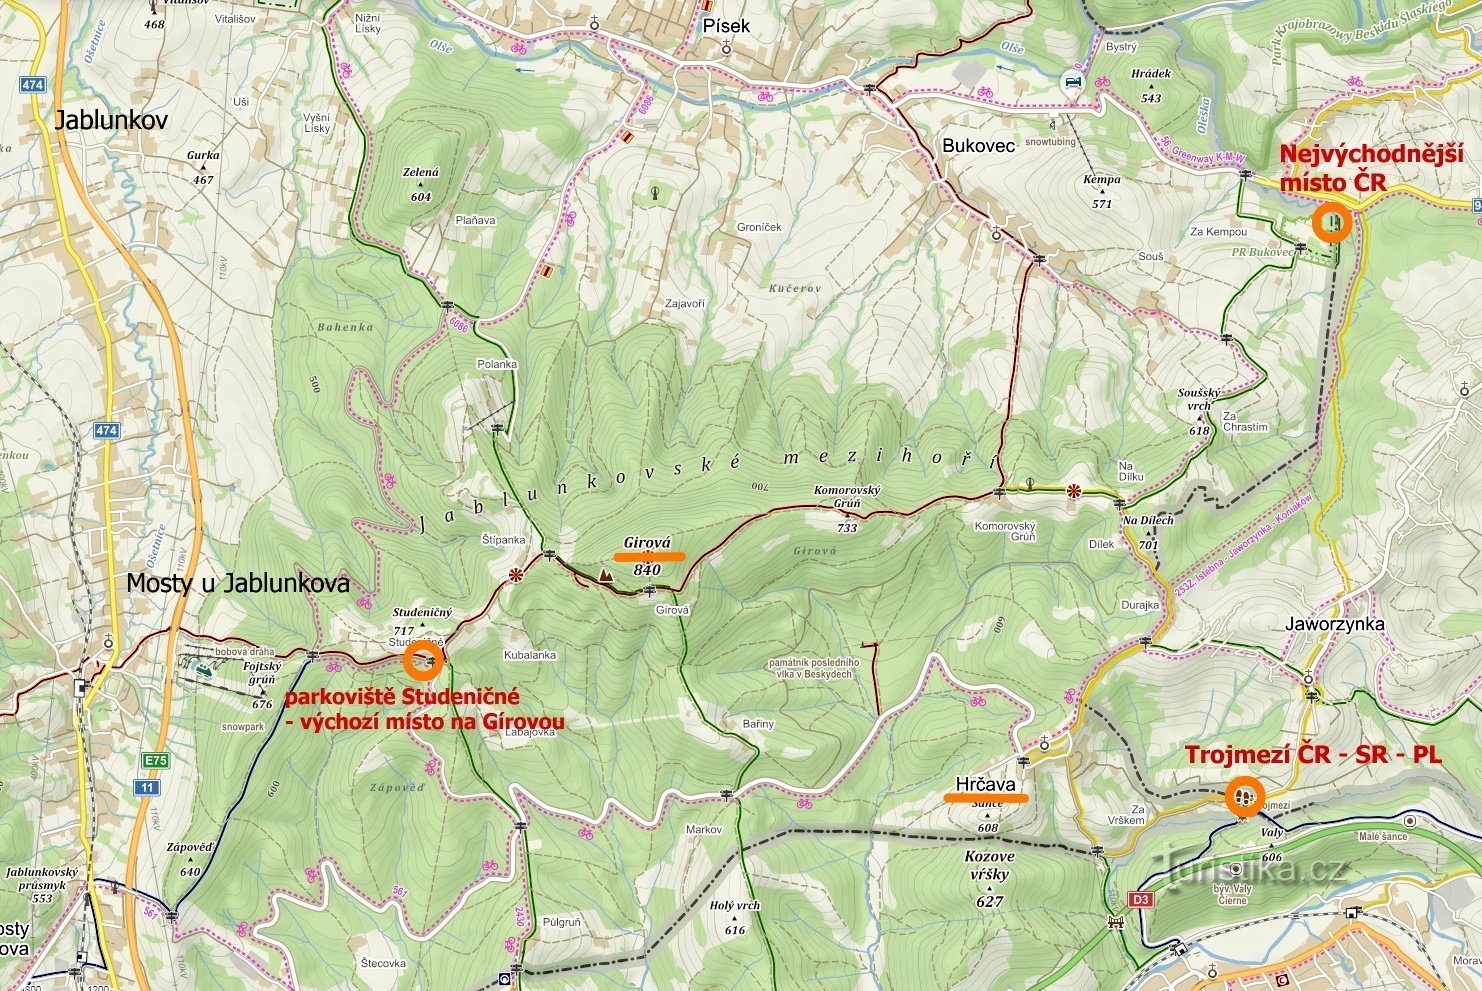 карта посещенных мест: Крайняя восточная точка Чехии, Хрчава - Троймези, Яблунковске м.